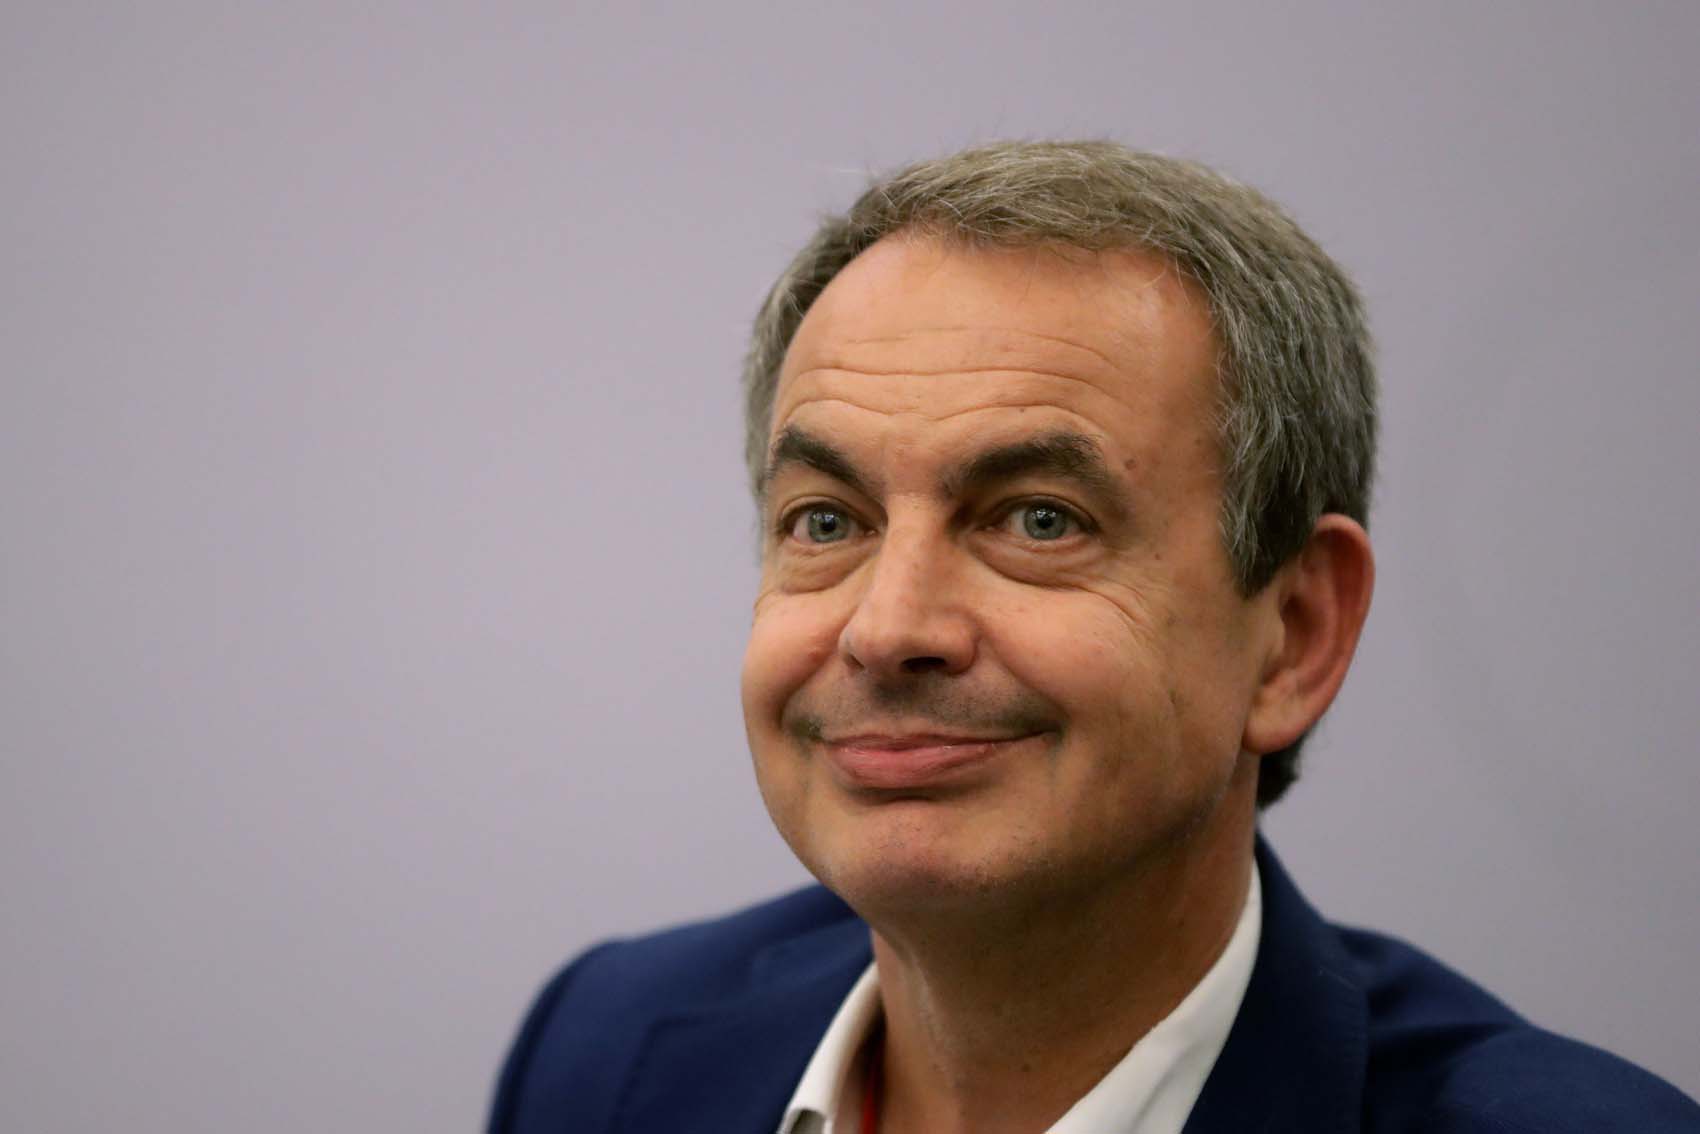 Zapatero de nuevo en Caracas “en una breve visita” para reunirse con representantes del Gobierno